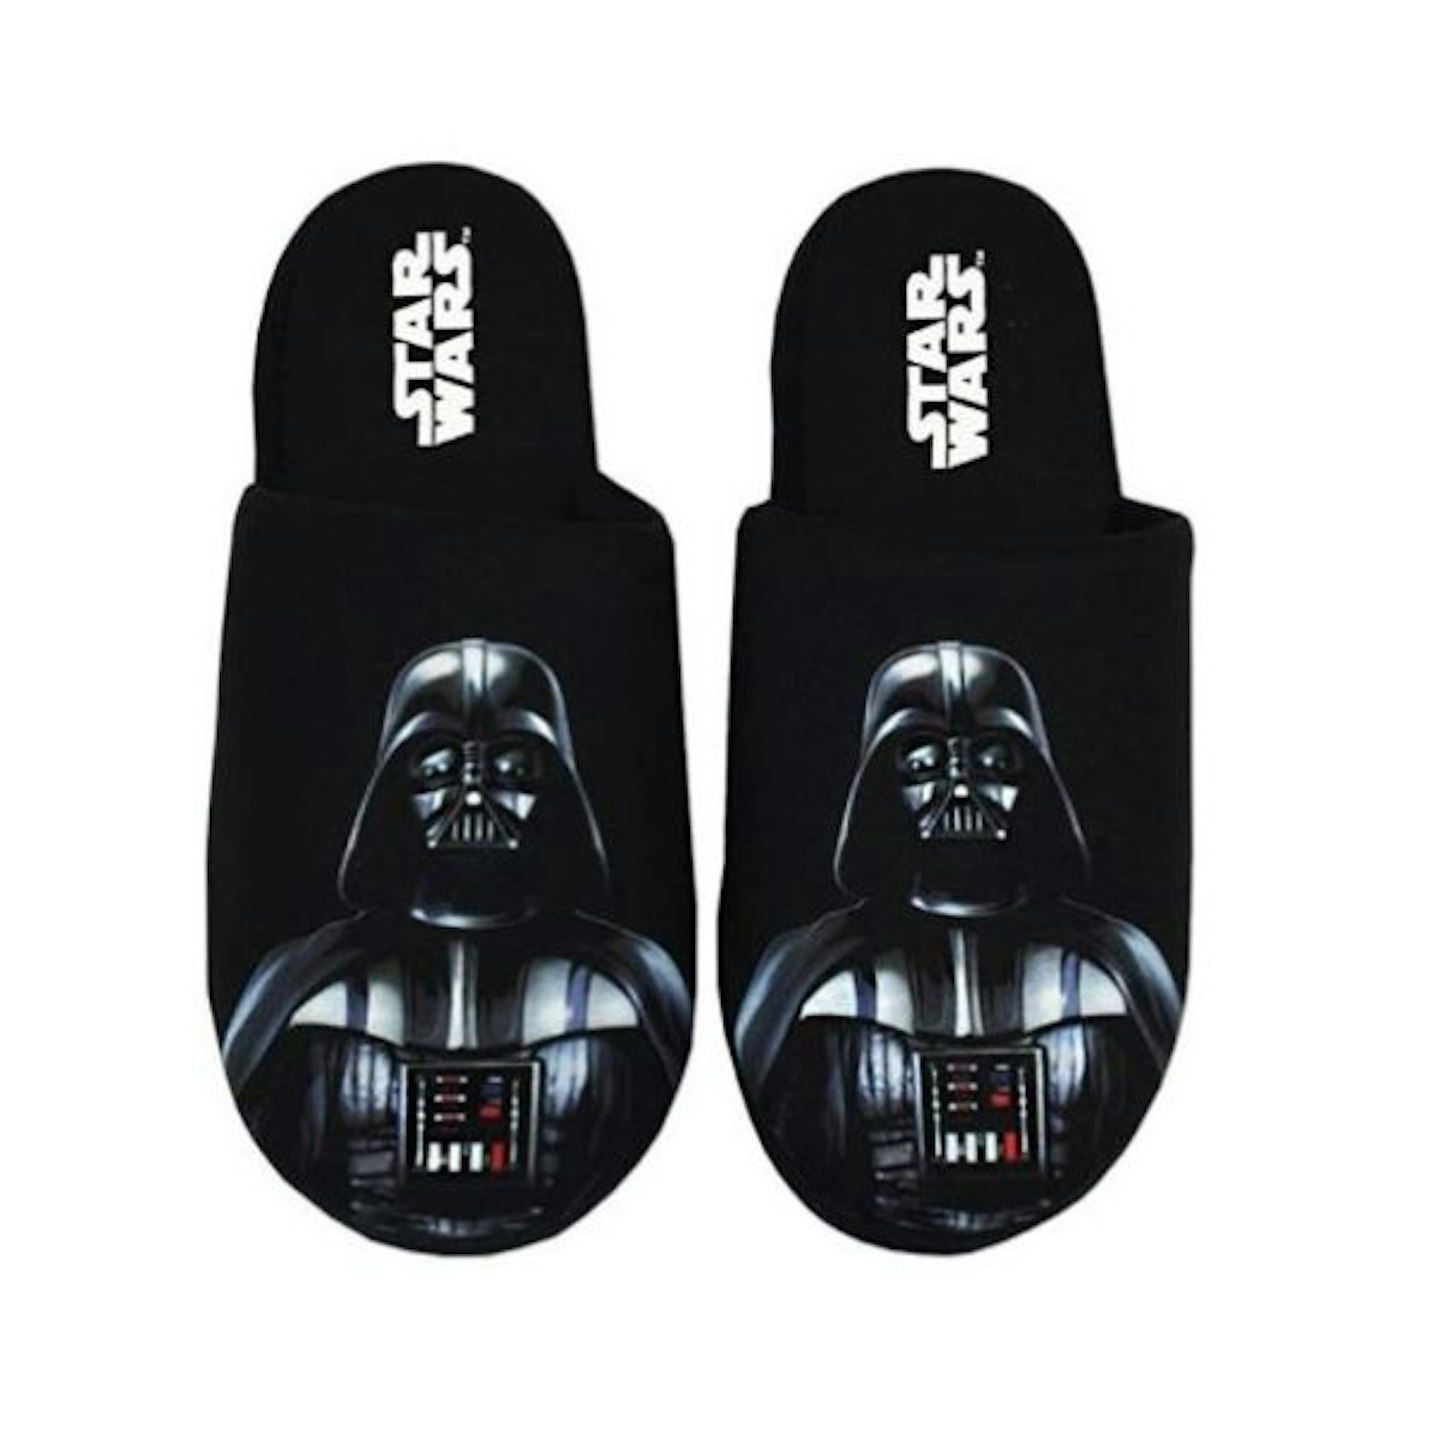 Star Wars Slippers for Men